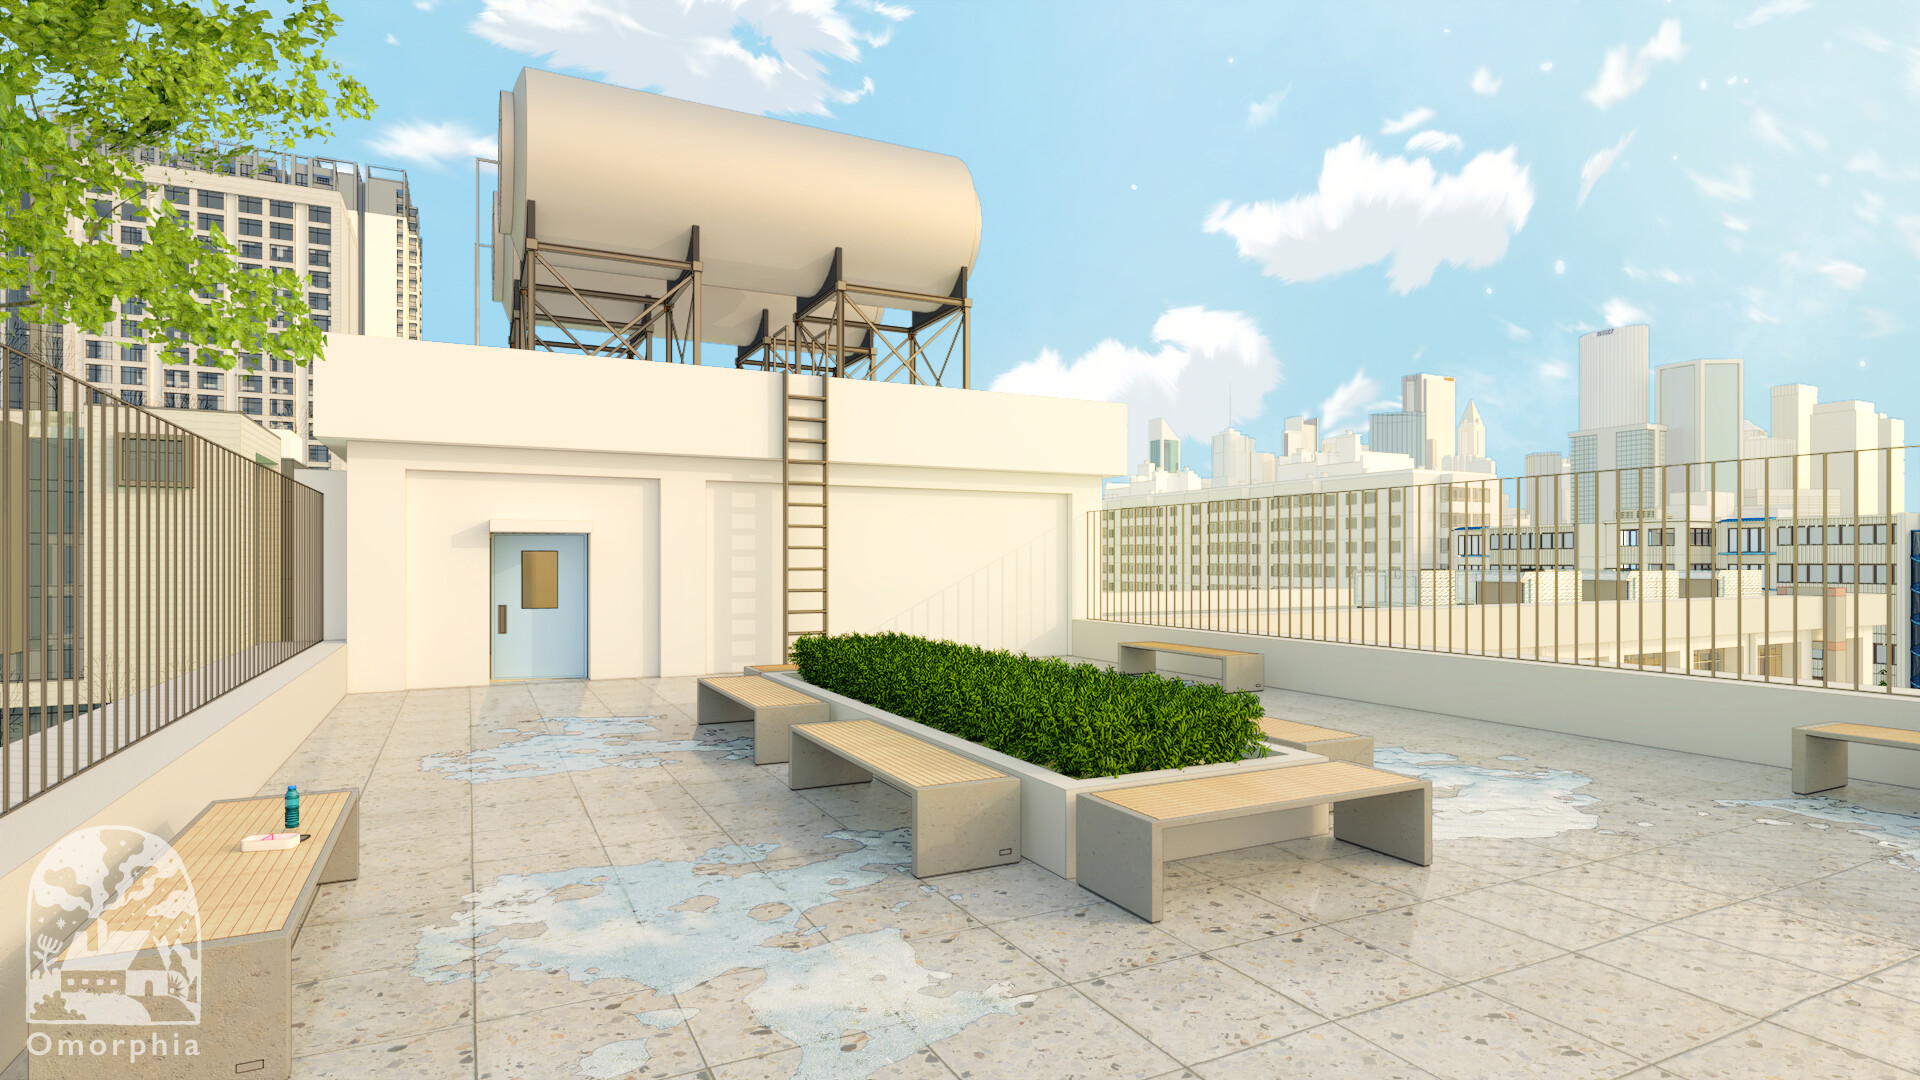 ArtStation - School Rooftop